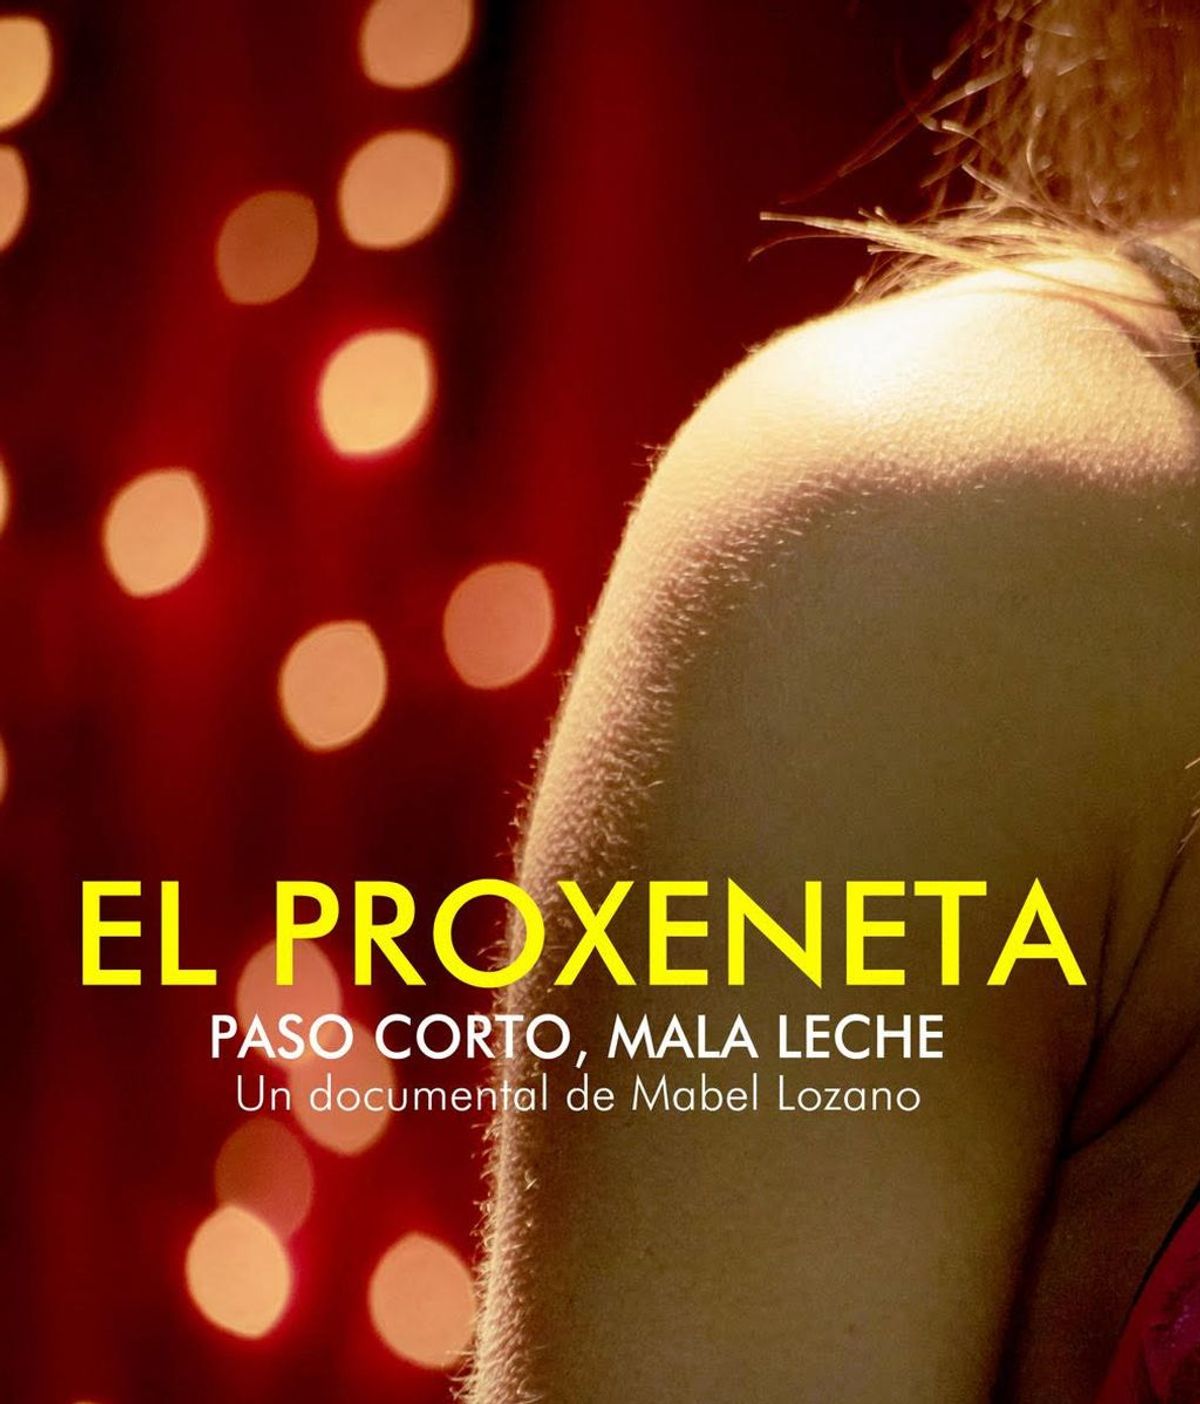 Mabel lozano estrena El Proxeneta, paso corto, mala leche” primer documental que da voz al testimonio de un exproxeneta para contar cómo se sustenta este delito.